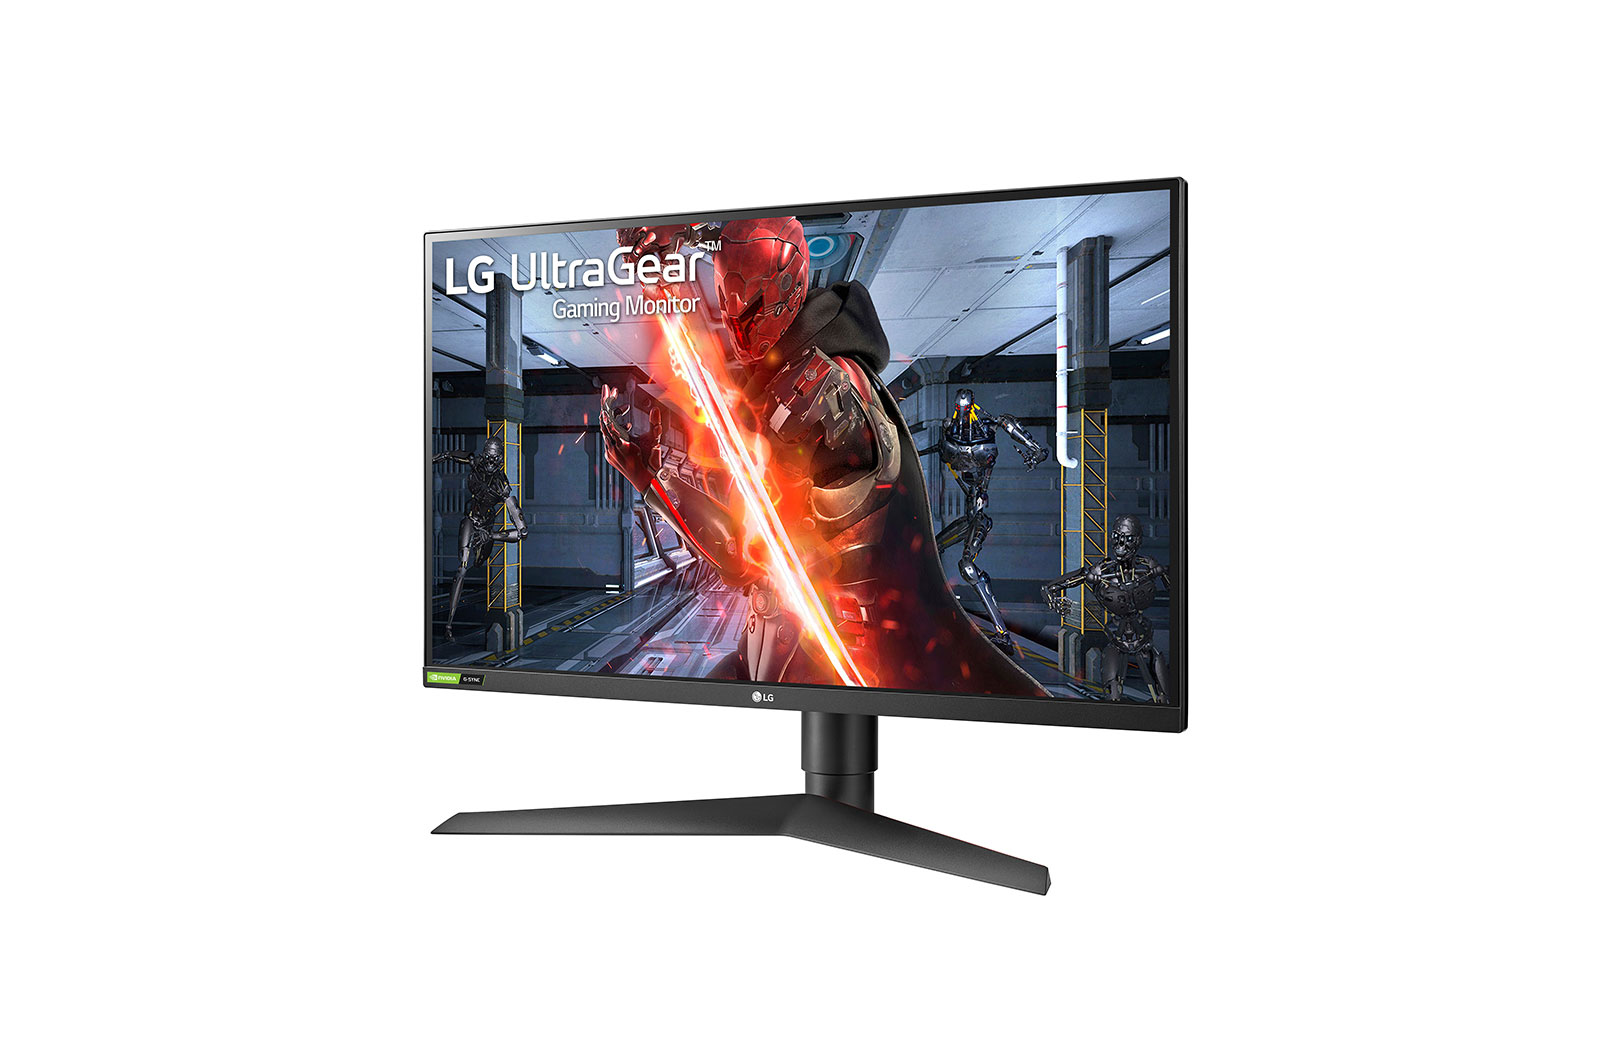 Immagine pubblicata in relazione al seguente contenuto: LG 27GN750-B, gaming monitor da 27-inch che lavora in Full HD a 240Hz | Nome immagine: news30581_LG-27GN750-B_2.jpg